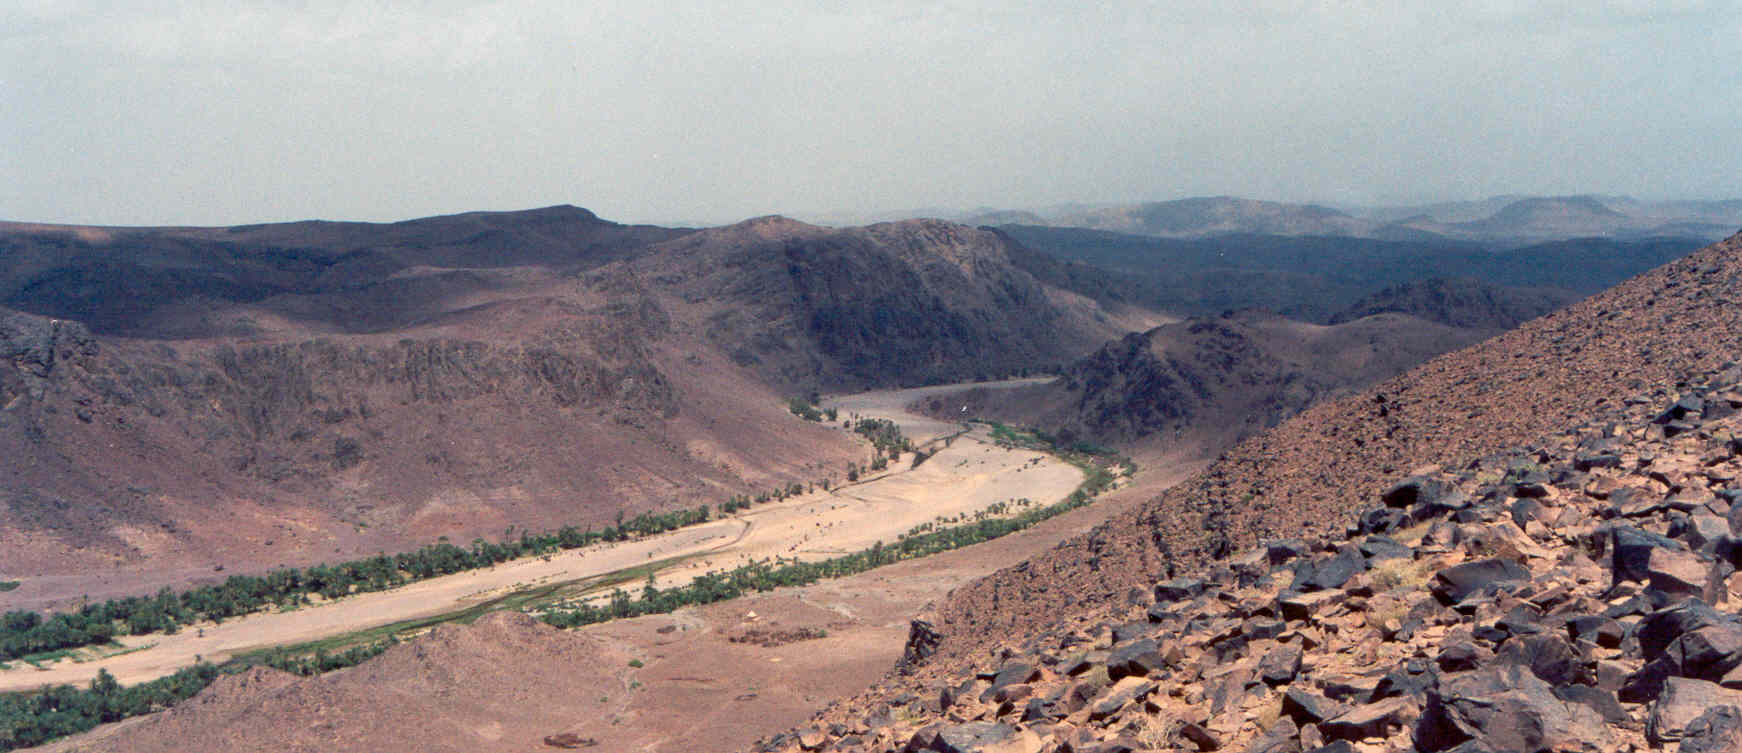 Fint - Ouarzazate